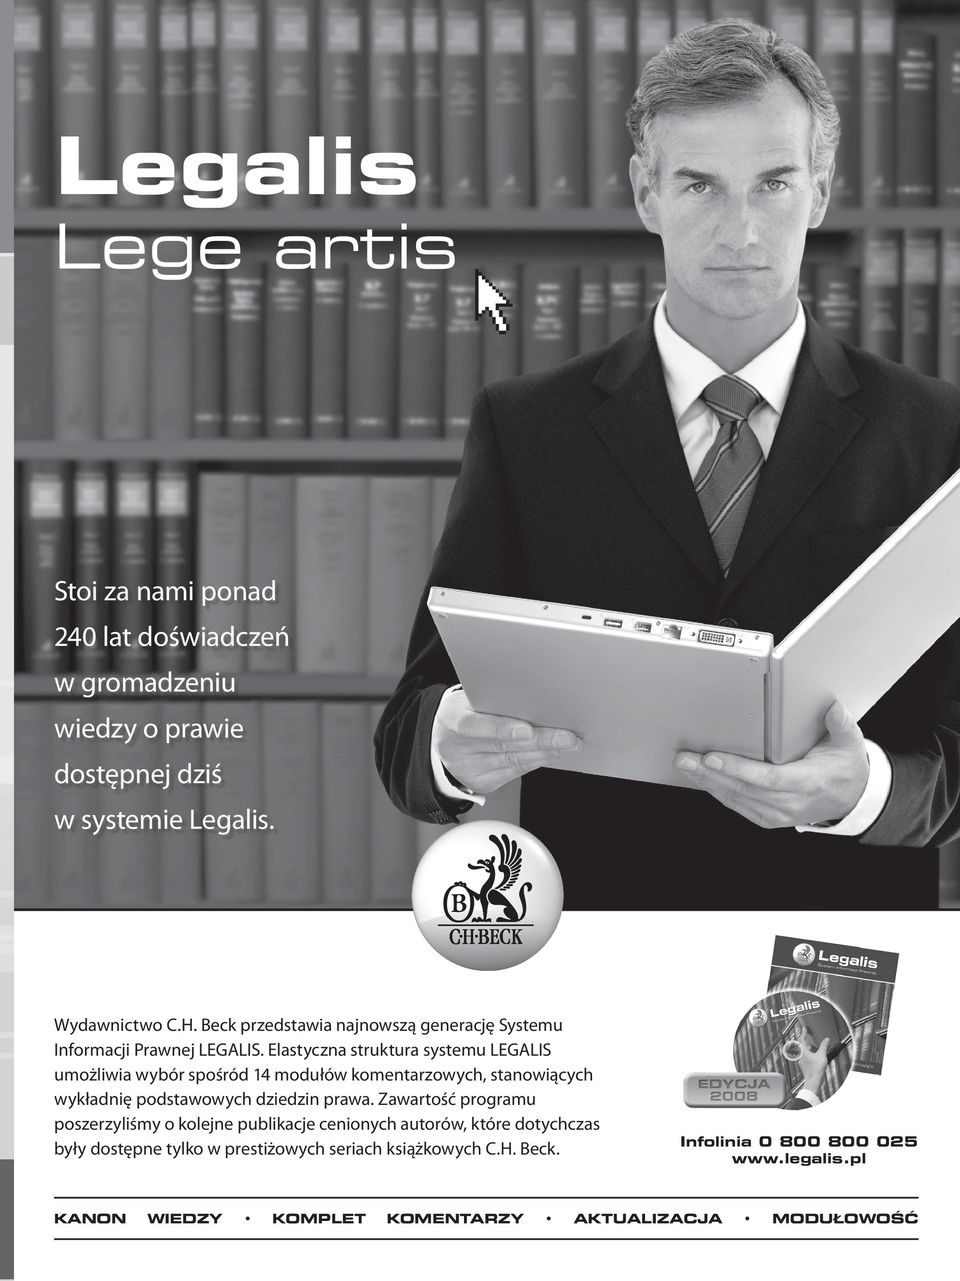 Elastyczna struktura systemu LEGALIS umożliwia wybór spośród 14 modułów komentarzowych, stanowiących wykładnię podstawowych dziedzin prawa.